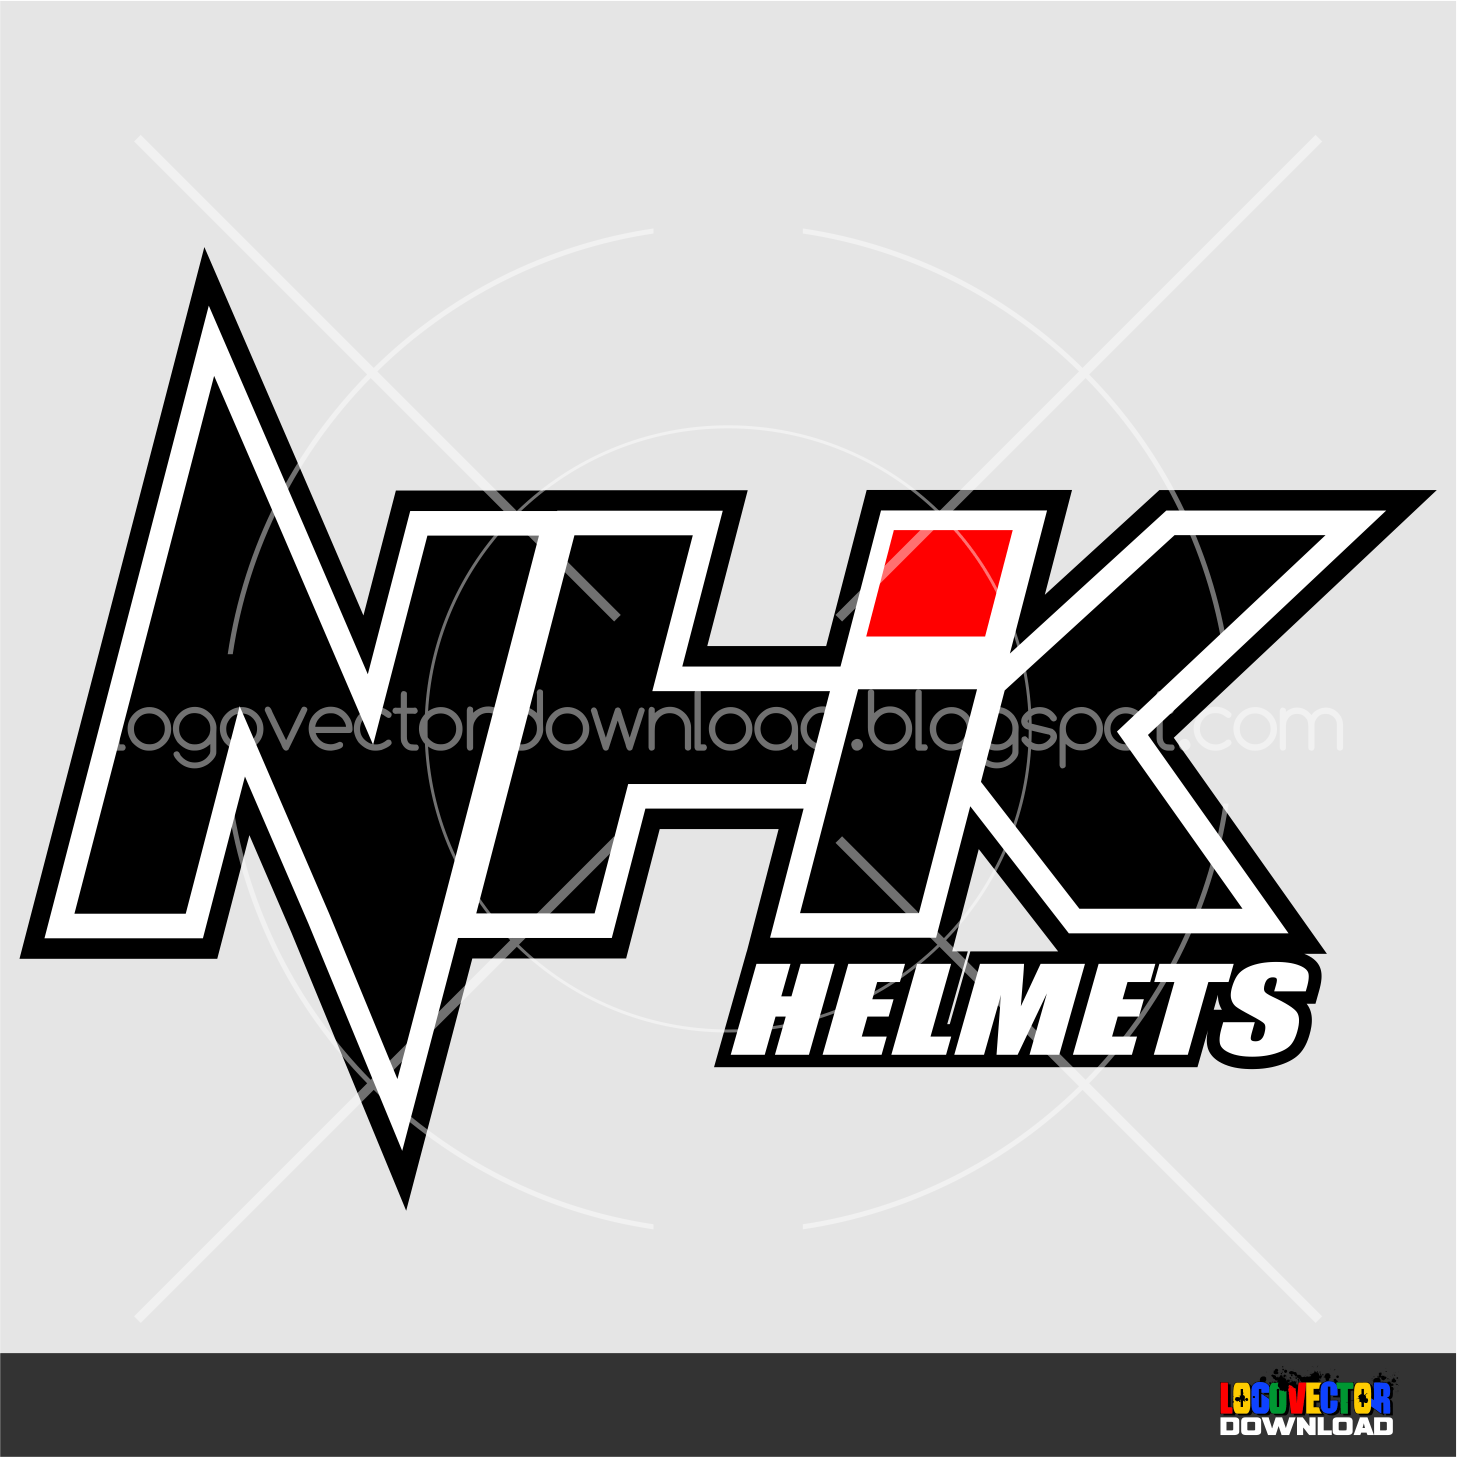 NHK Logo - NHK Helmet Logo Vector Cdr Vector Download